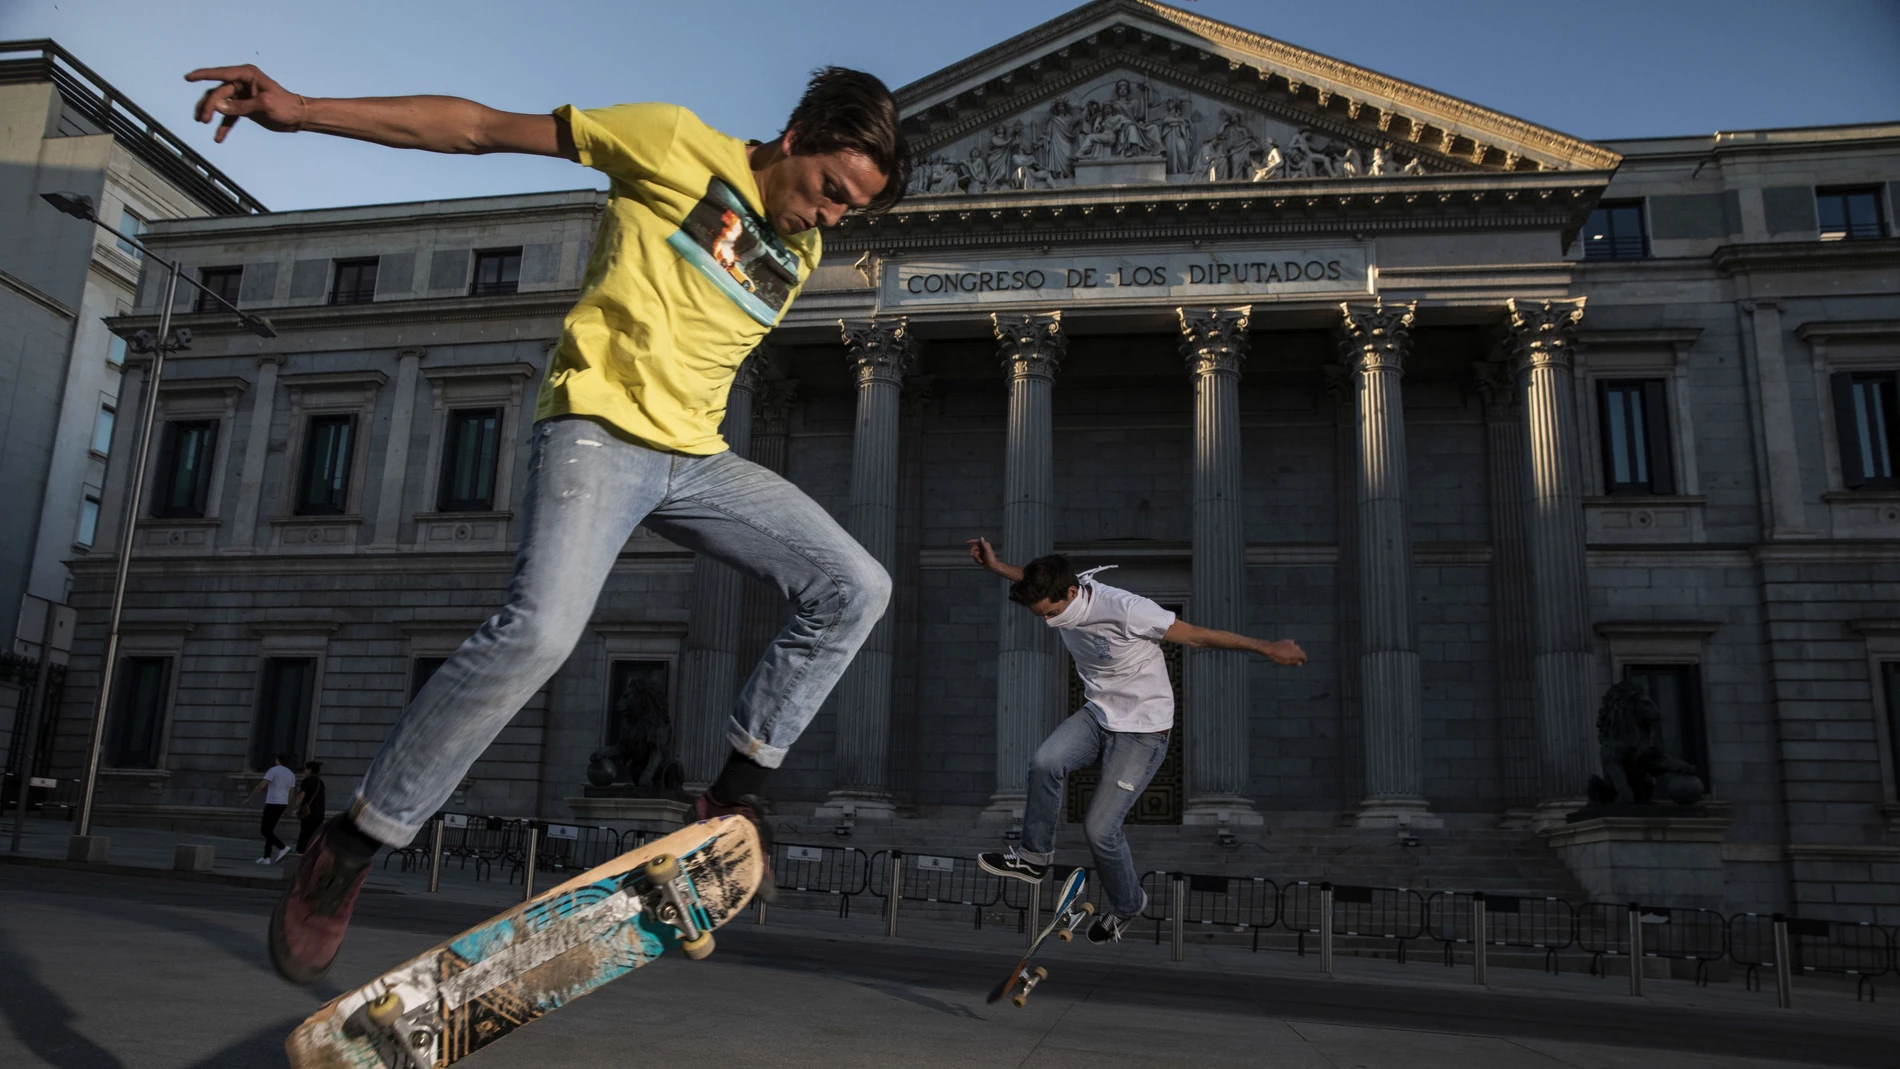 Dos jovenes practican skate delante del congreso 